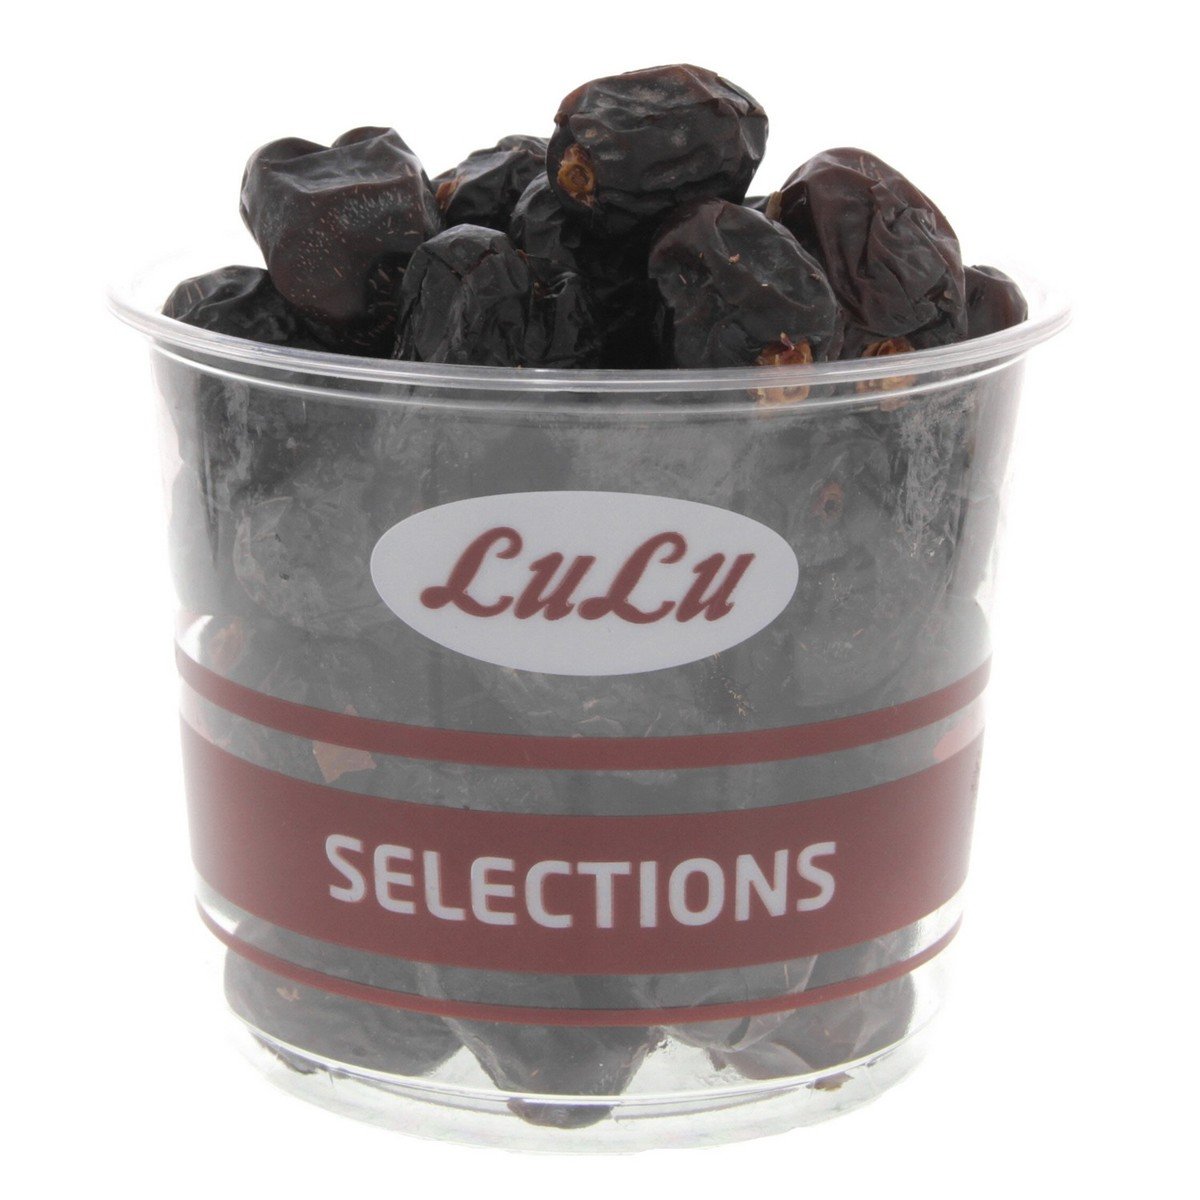 اشتري قم بشراء لولو تمر عجوة المدينة 1 كجم Online at Best Price من الموقع - من لولو هايبر ماركت Roastery Dried Fruit في الامارات